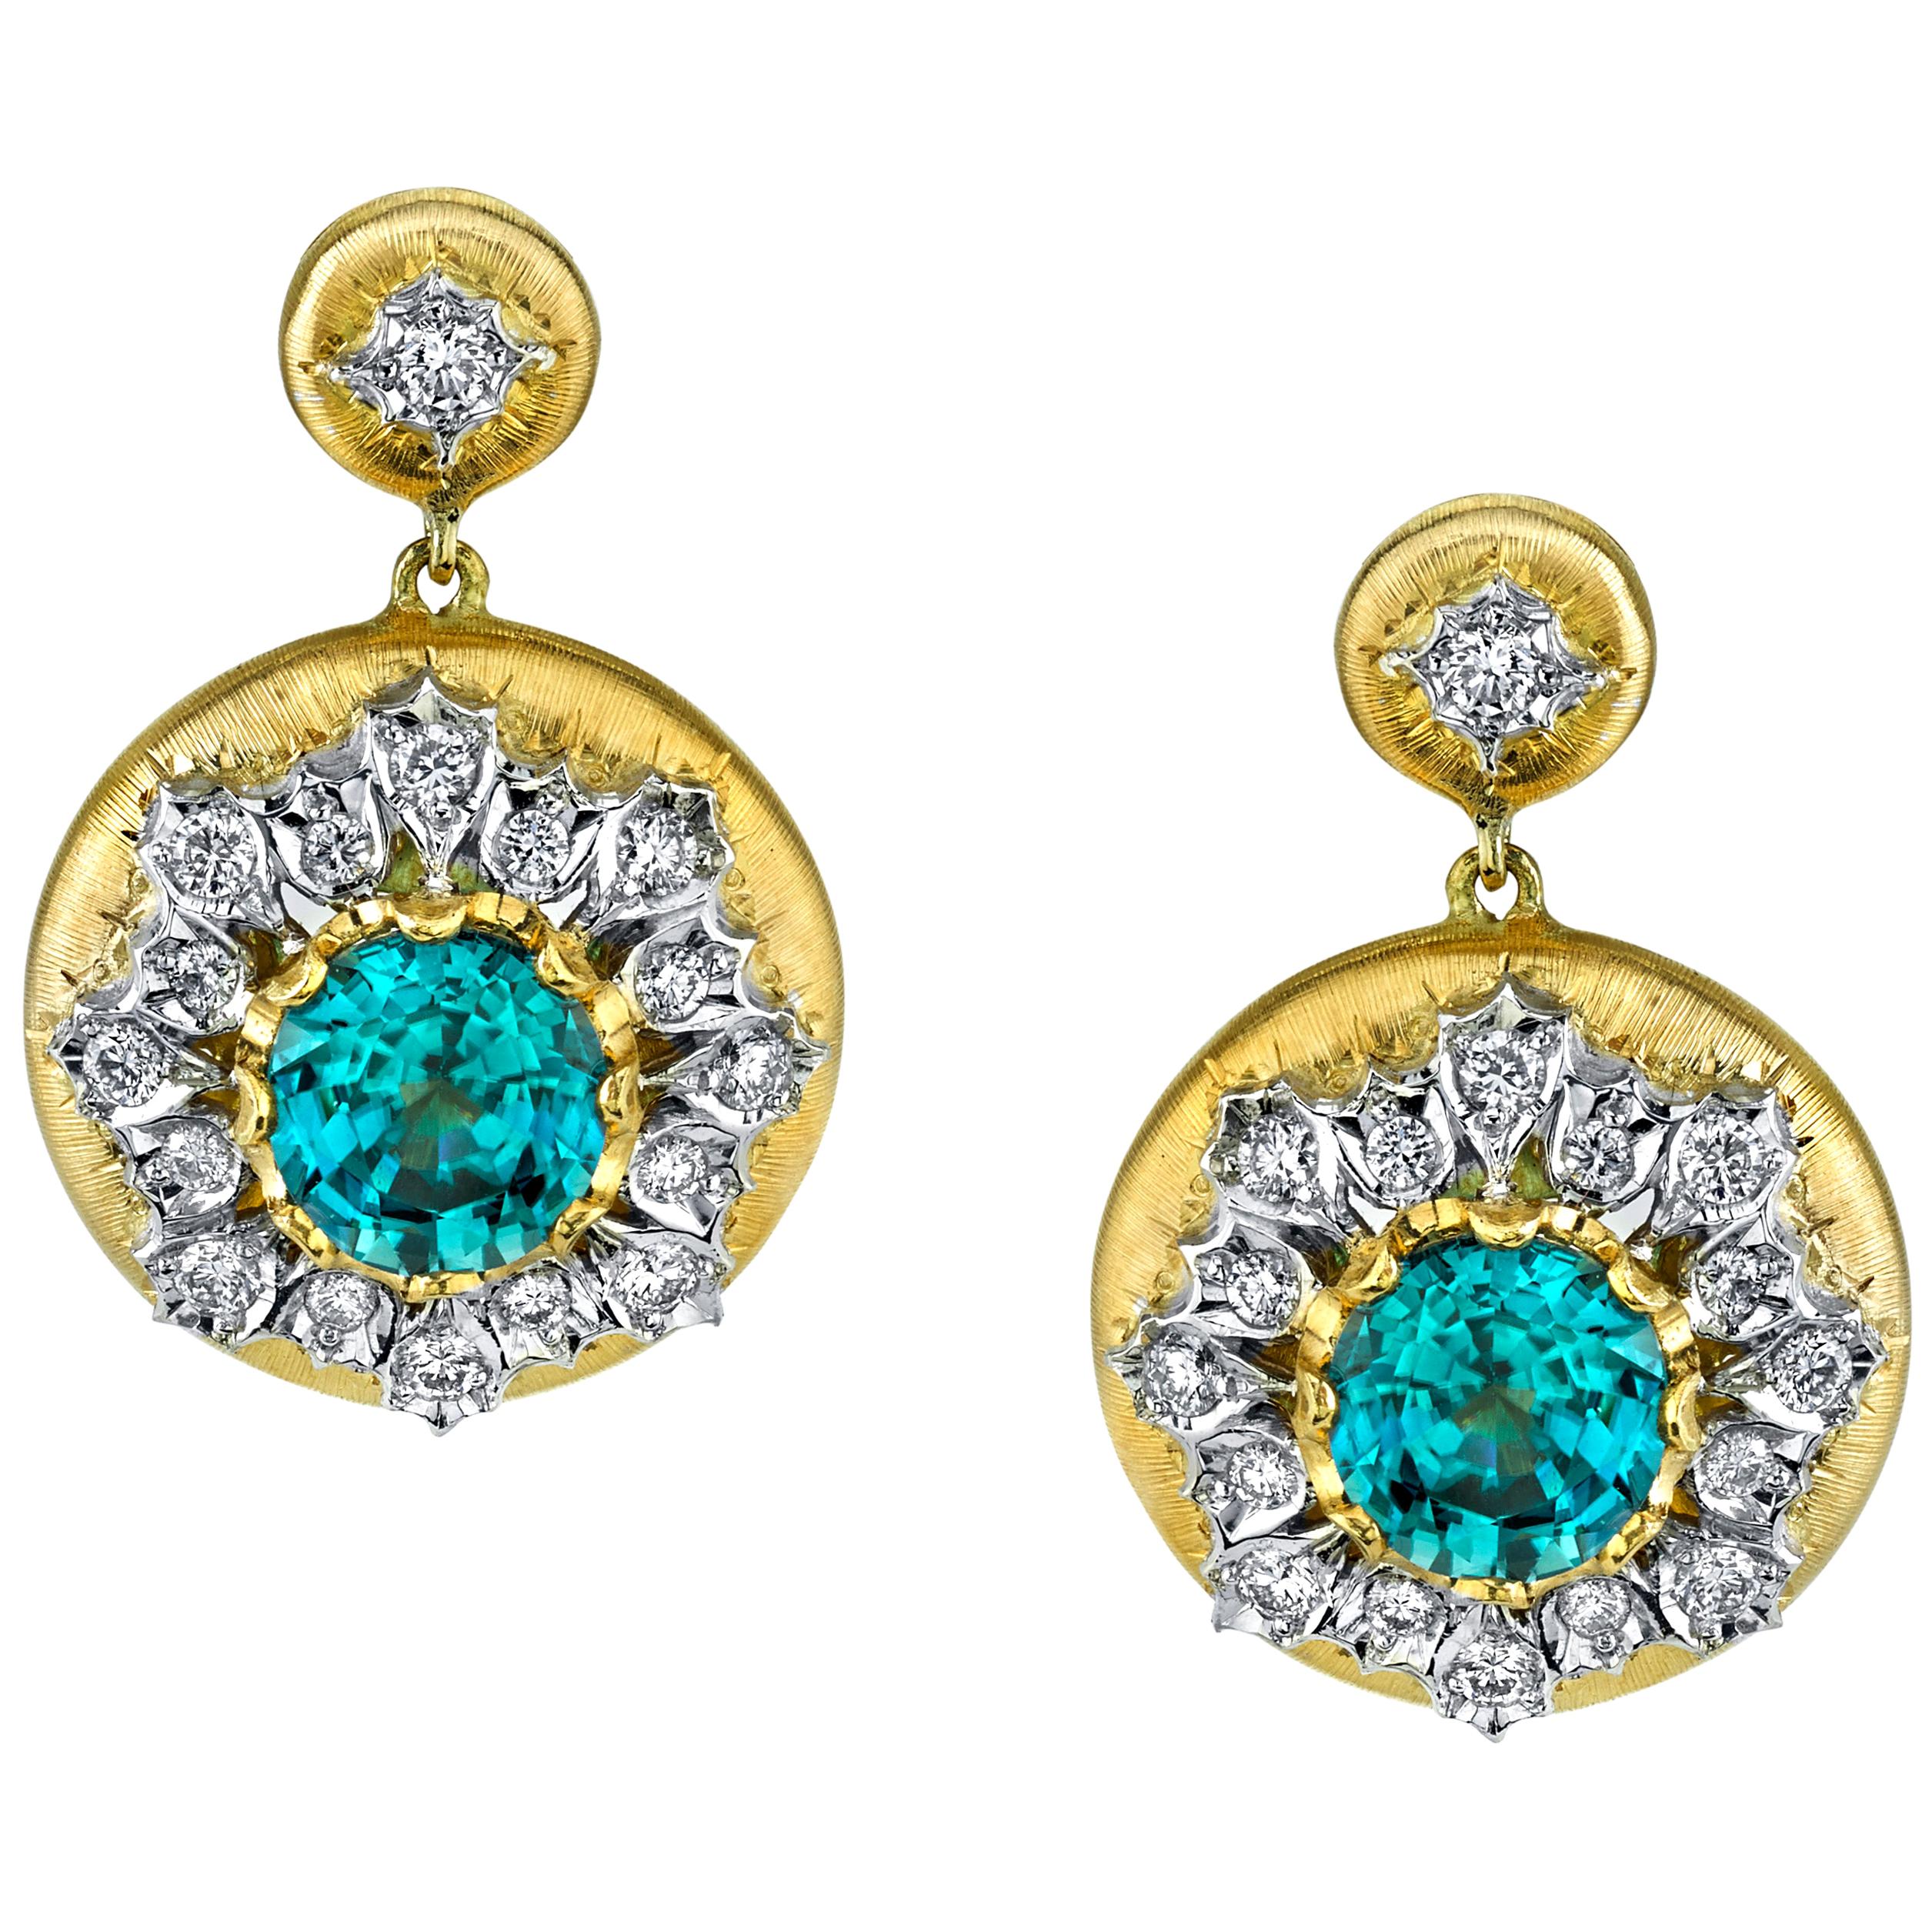 Florentine Style 7 ct. t.w. Blue Zircon, Diamond Two-Toned Gold Drop Earrings